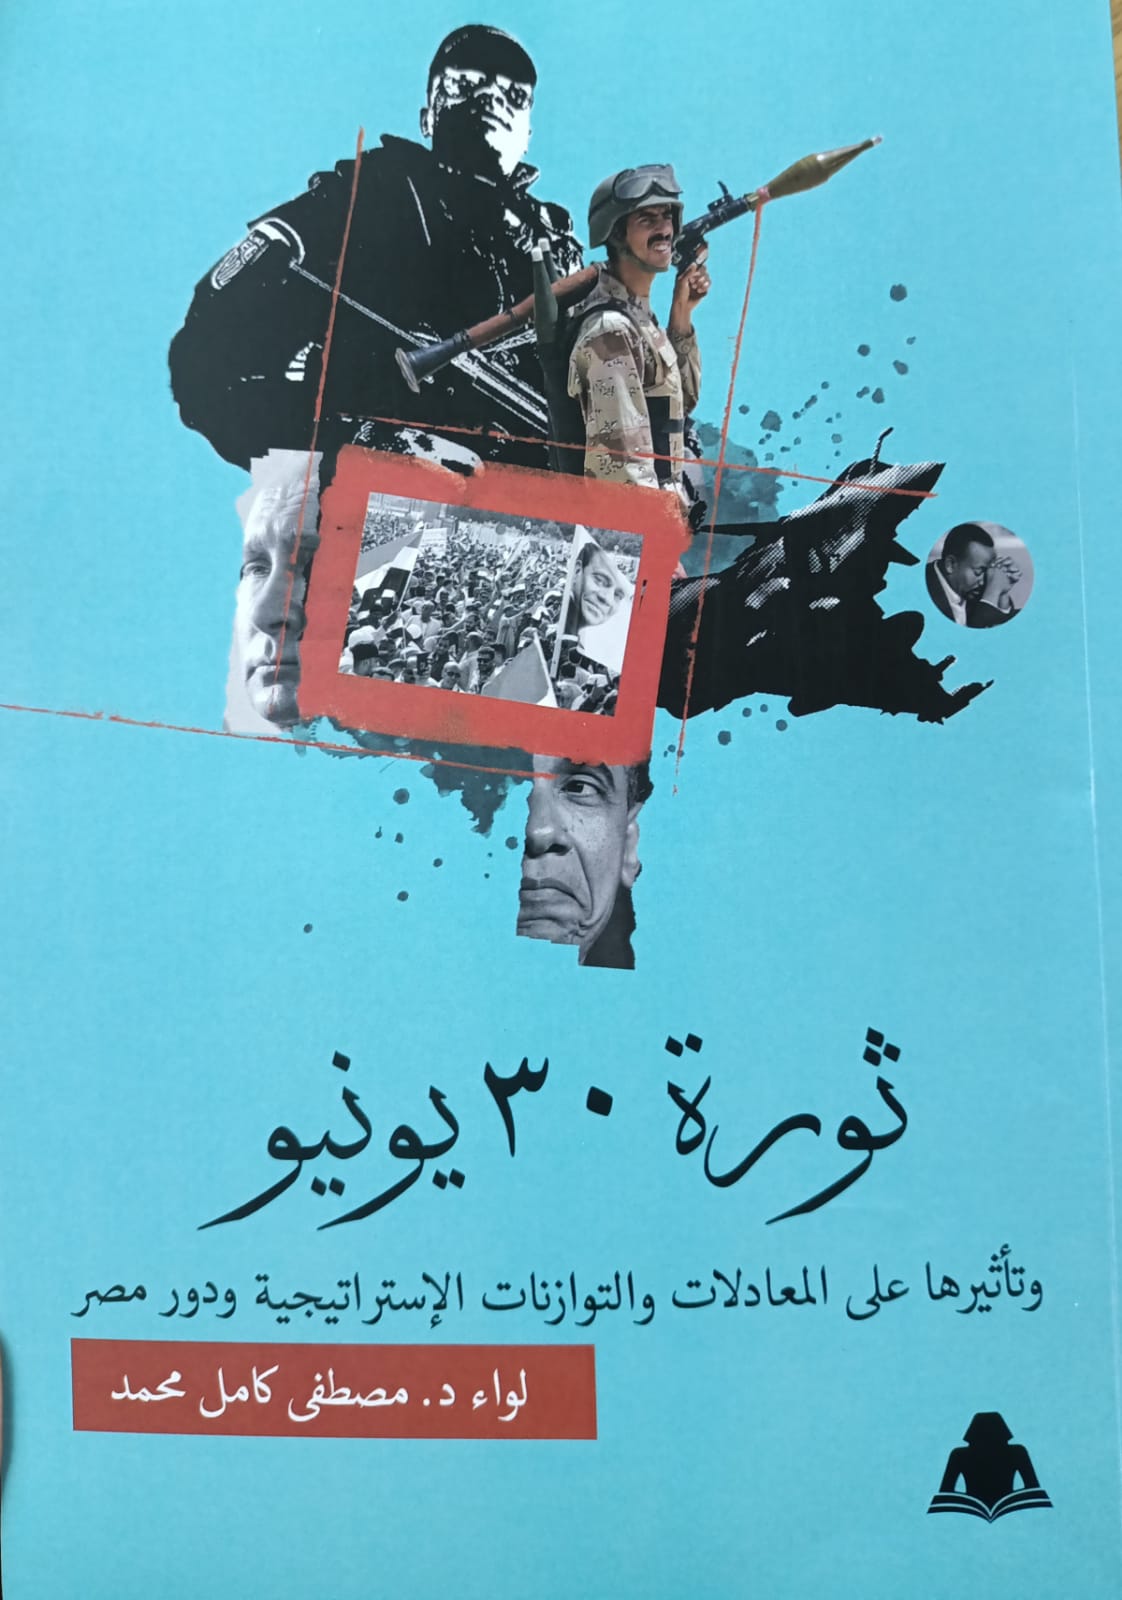 ثورة 30 يونيو وتأثيرها على المعادلات والتوازنات الاستراتيجية ودور مصر